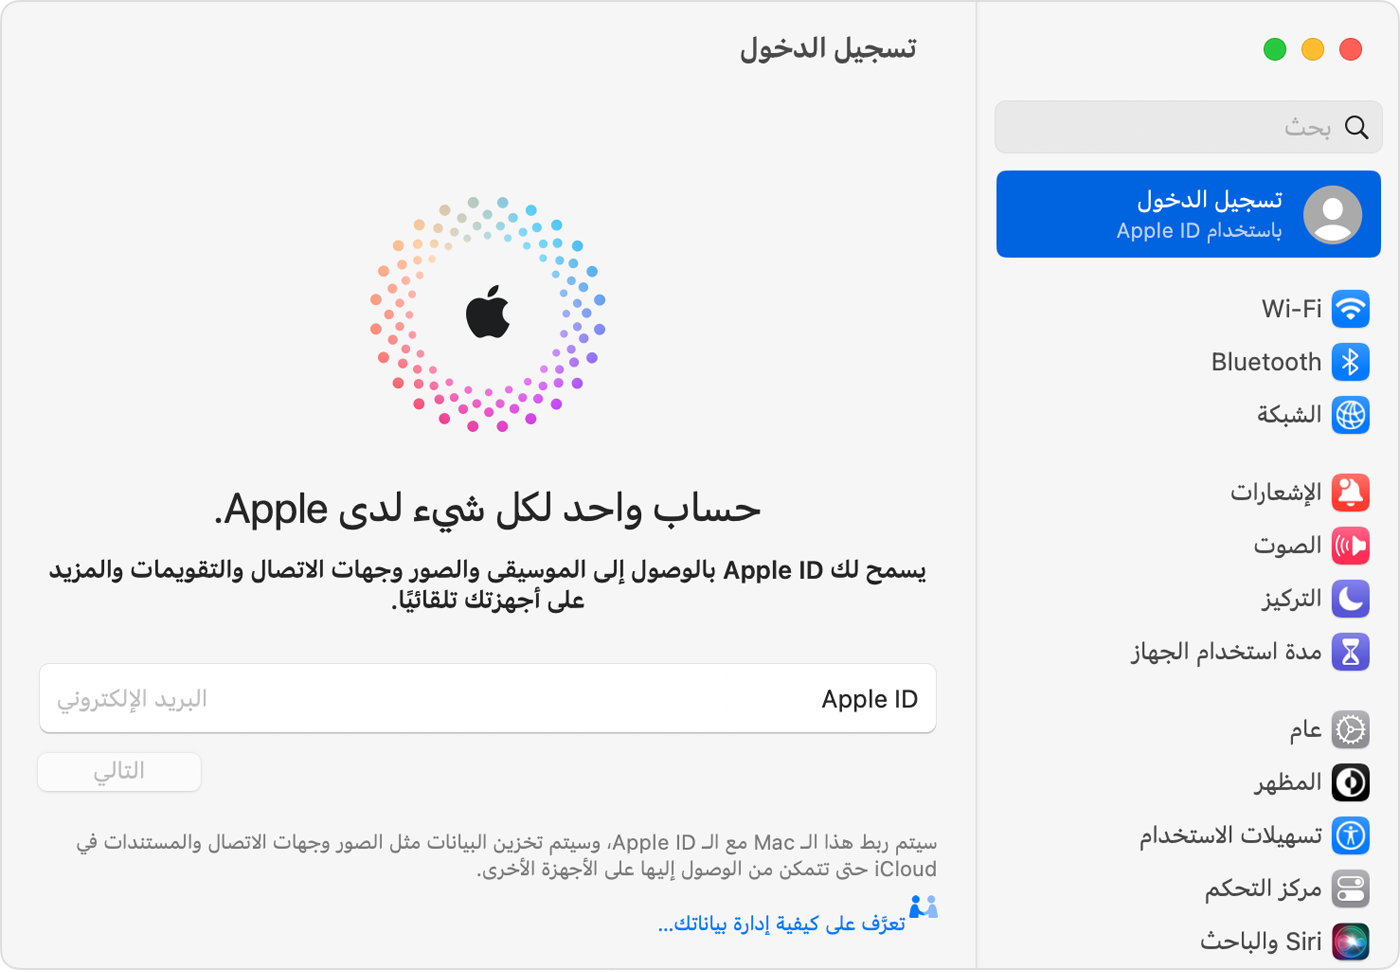 تسجيل الدخول باستخدام Apple ID - Apple دعم (KW)